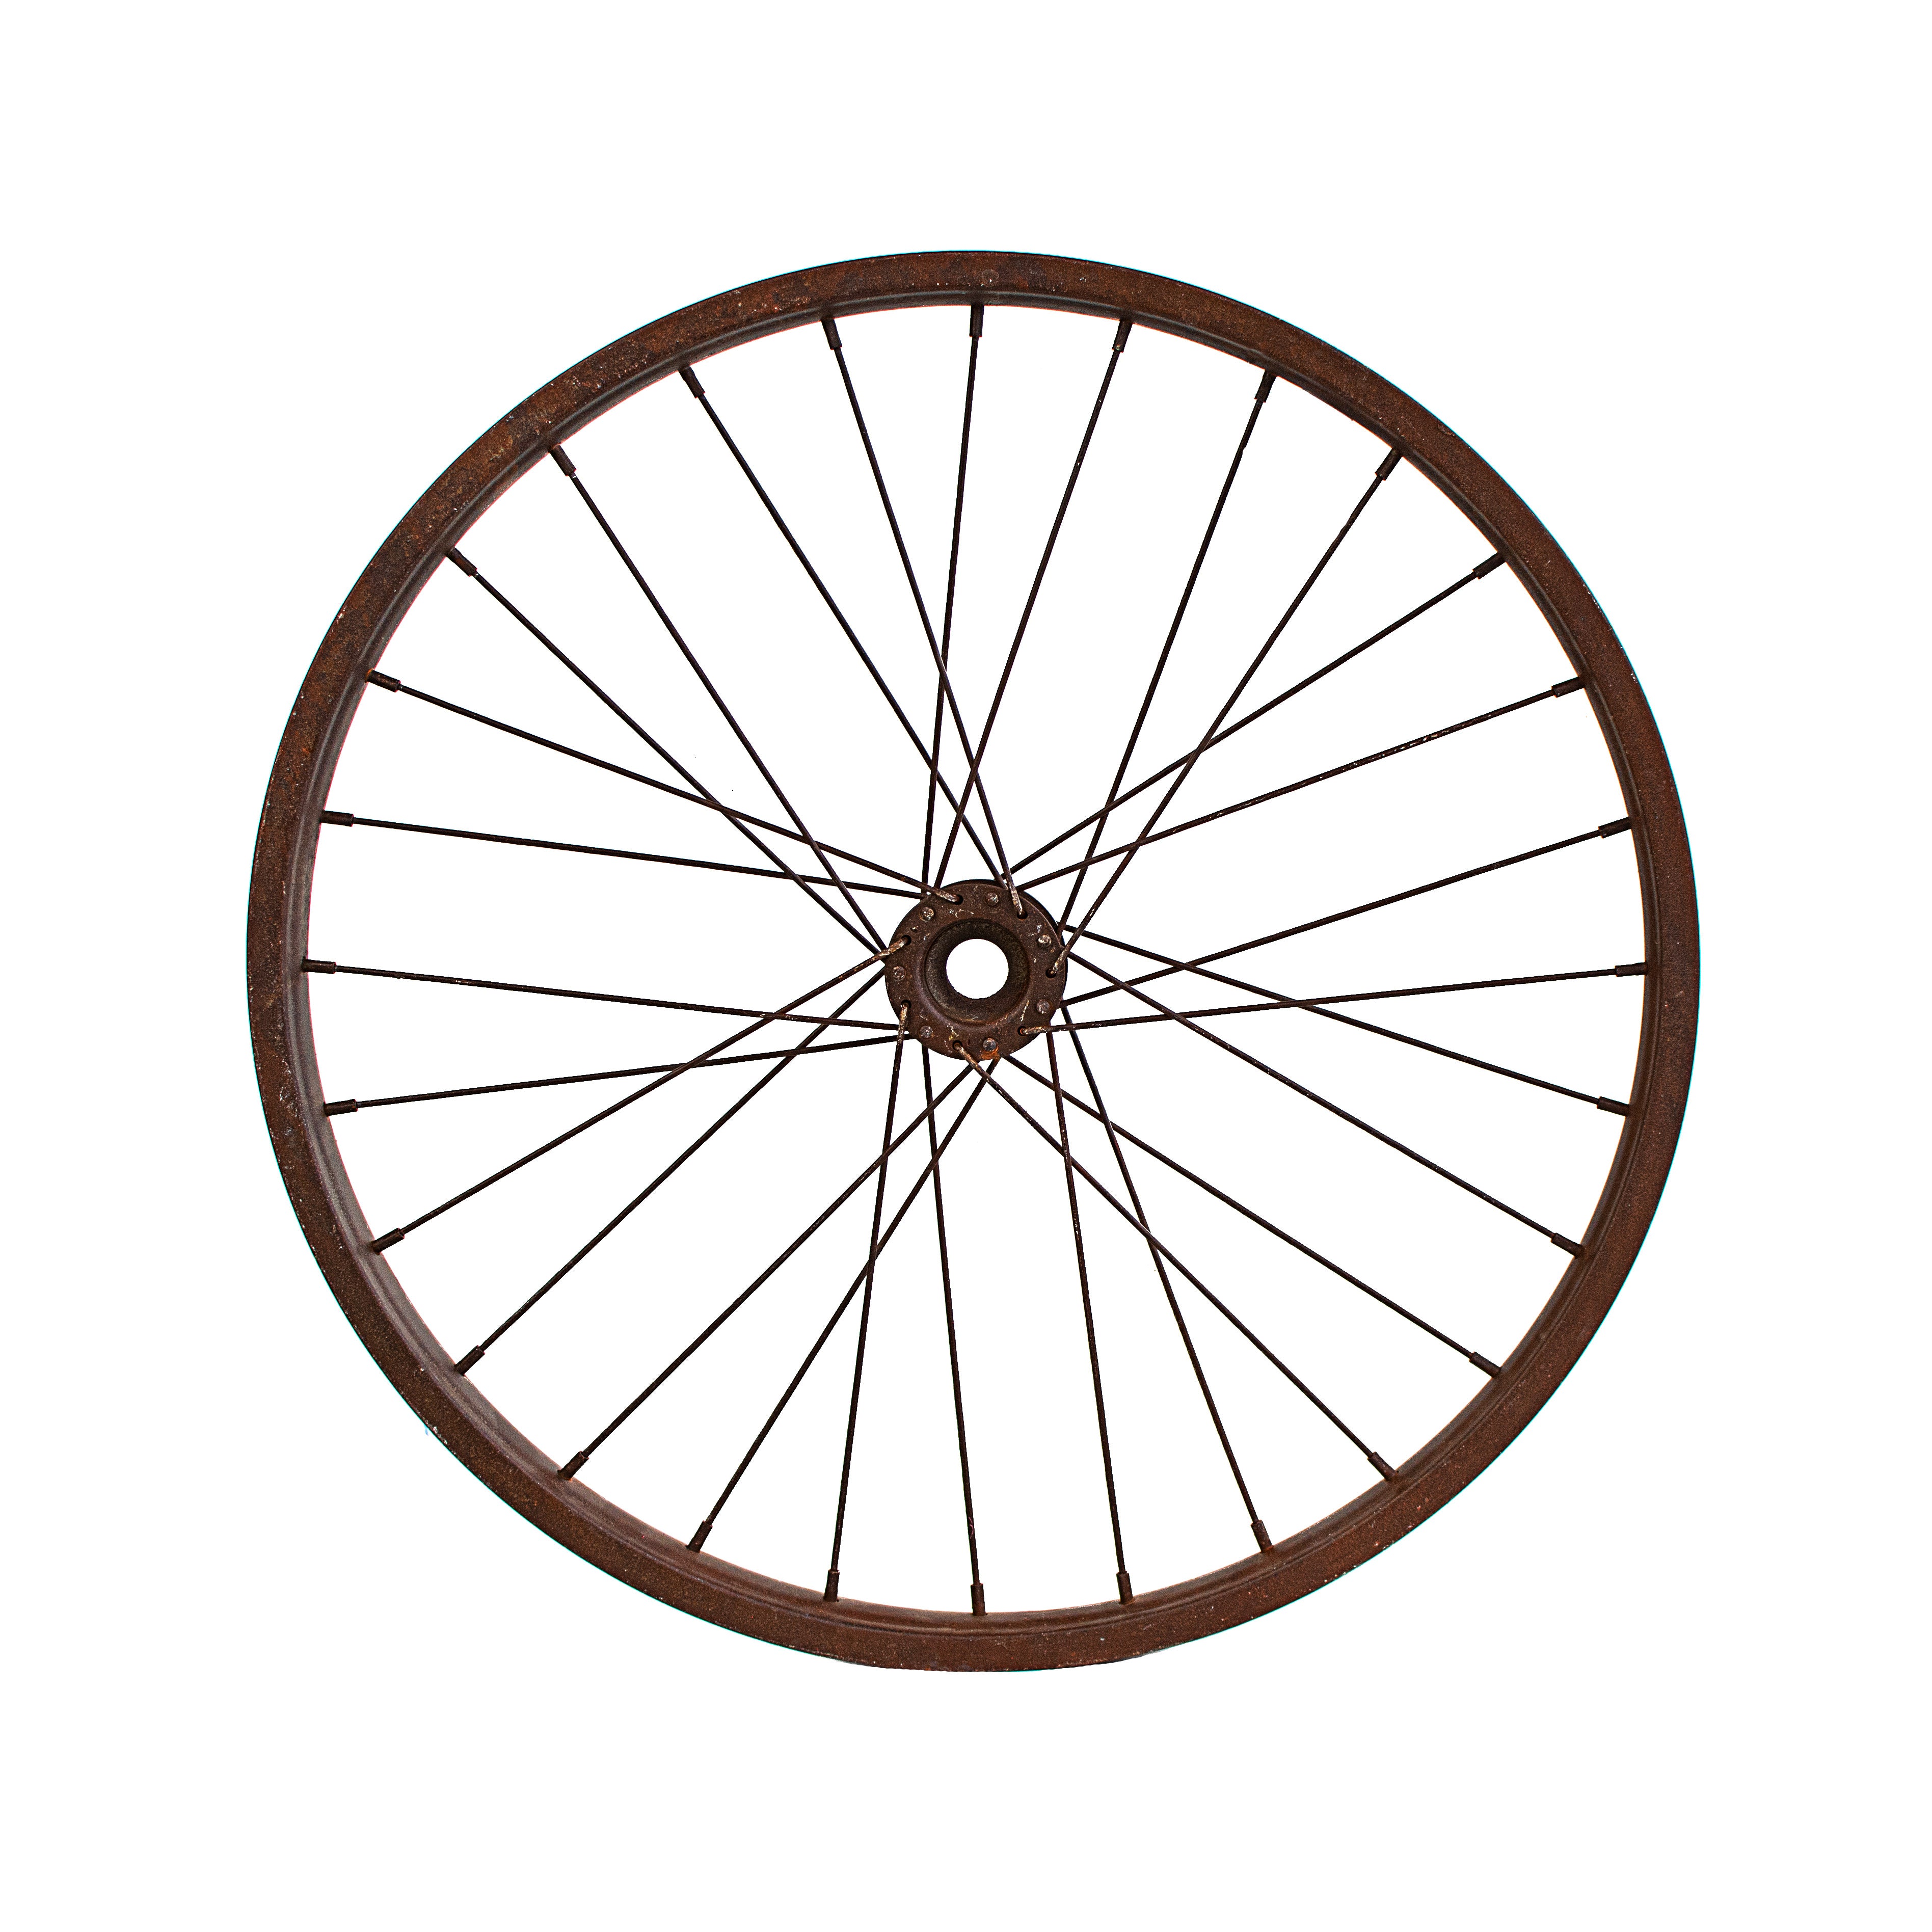 16" Decorative Bicycle Rim: Rust